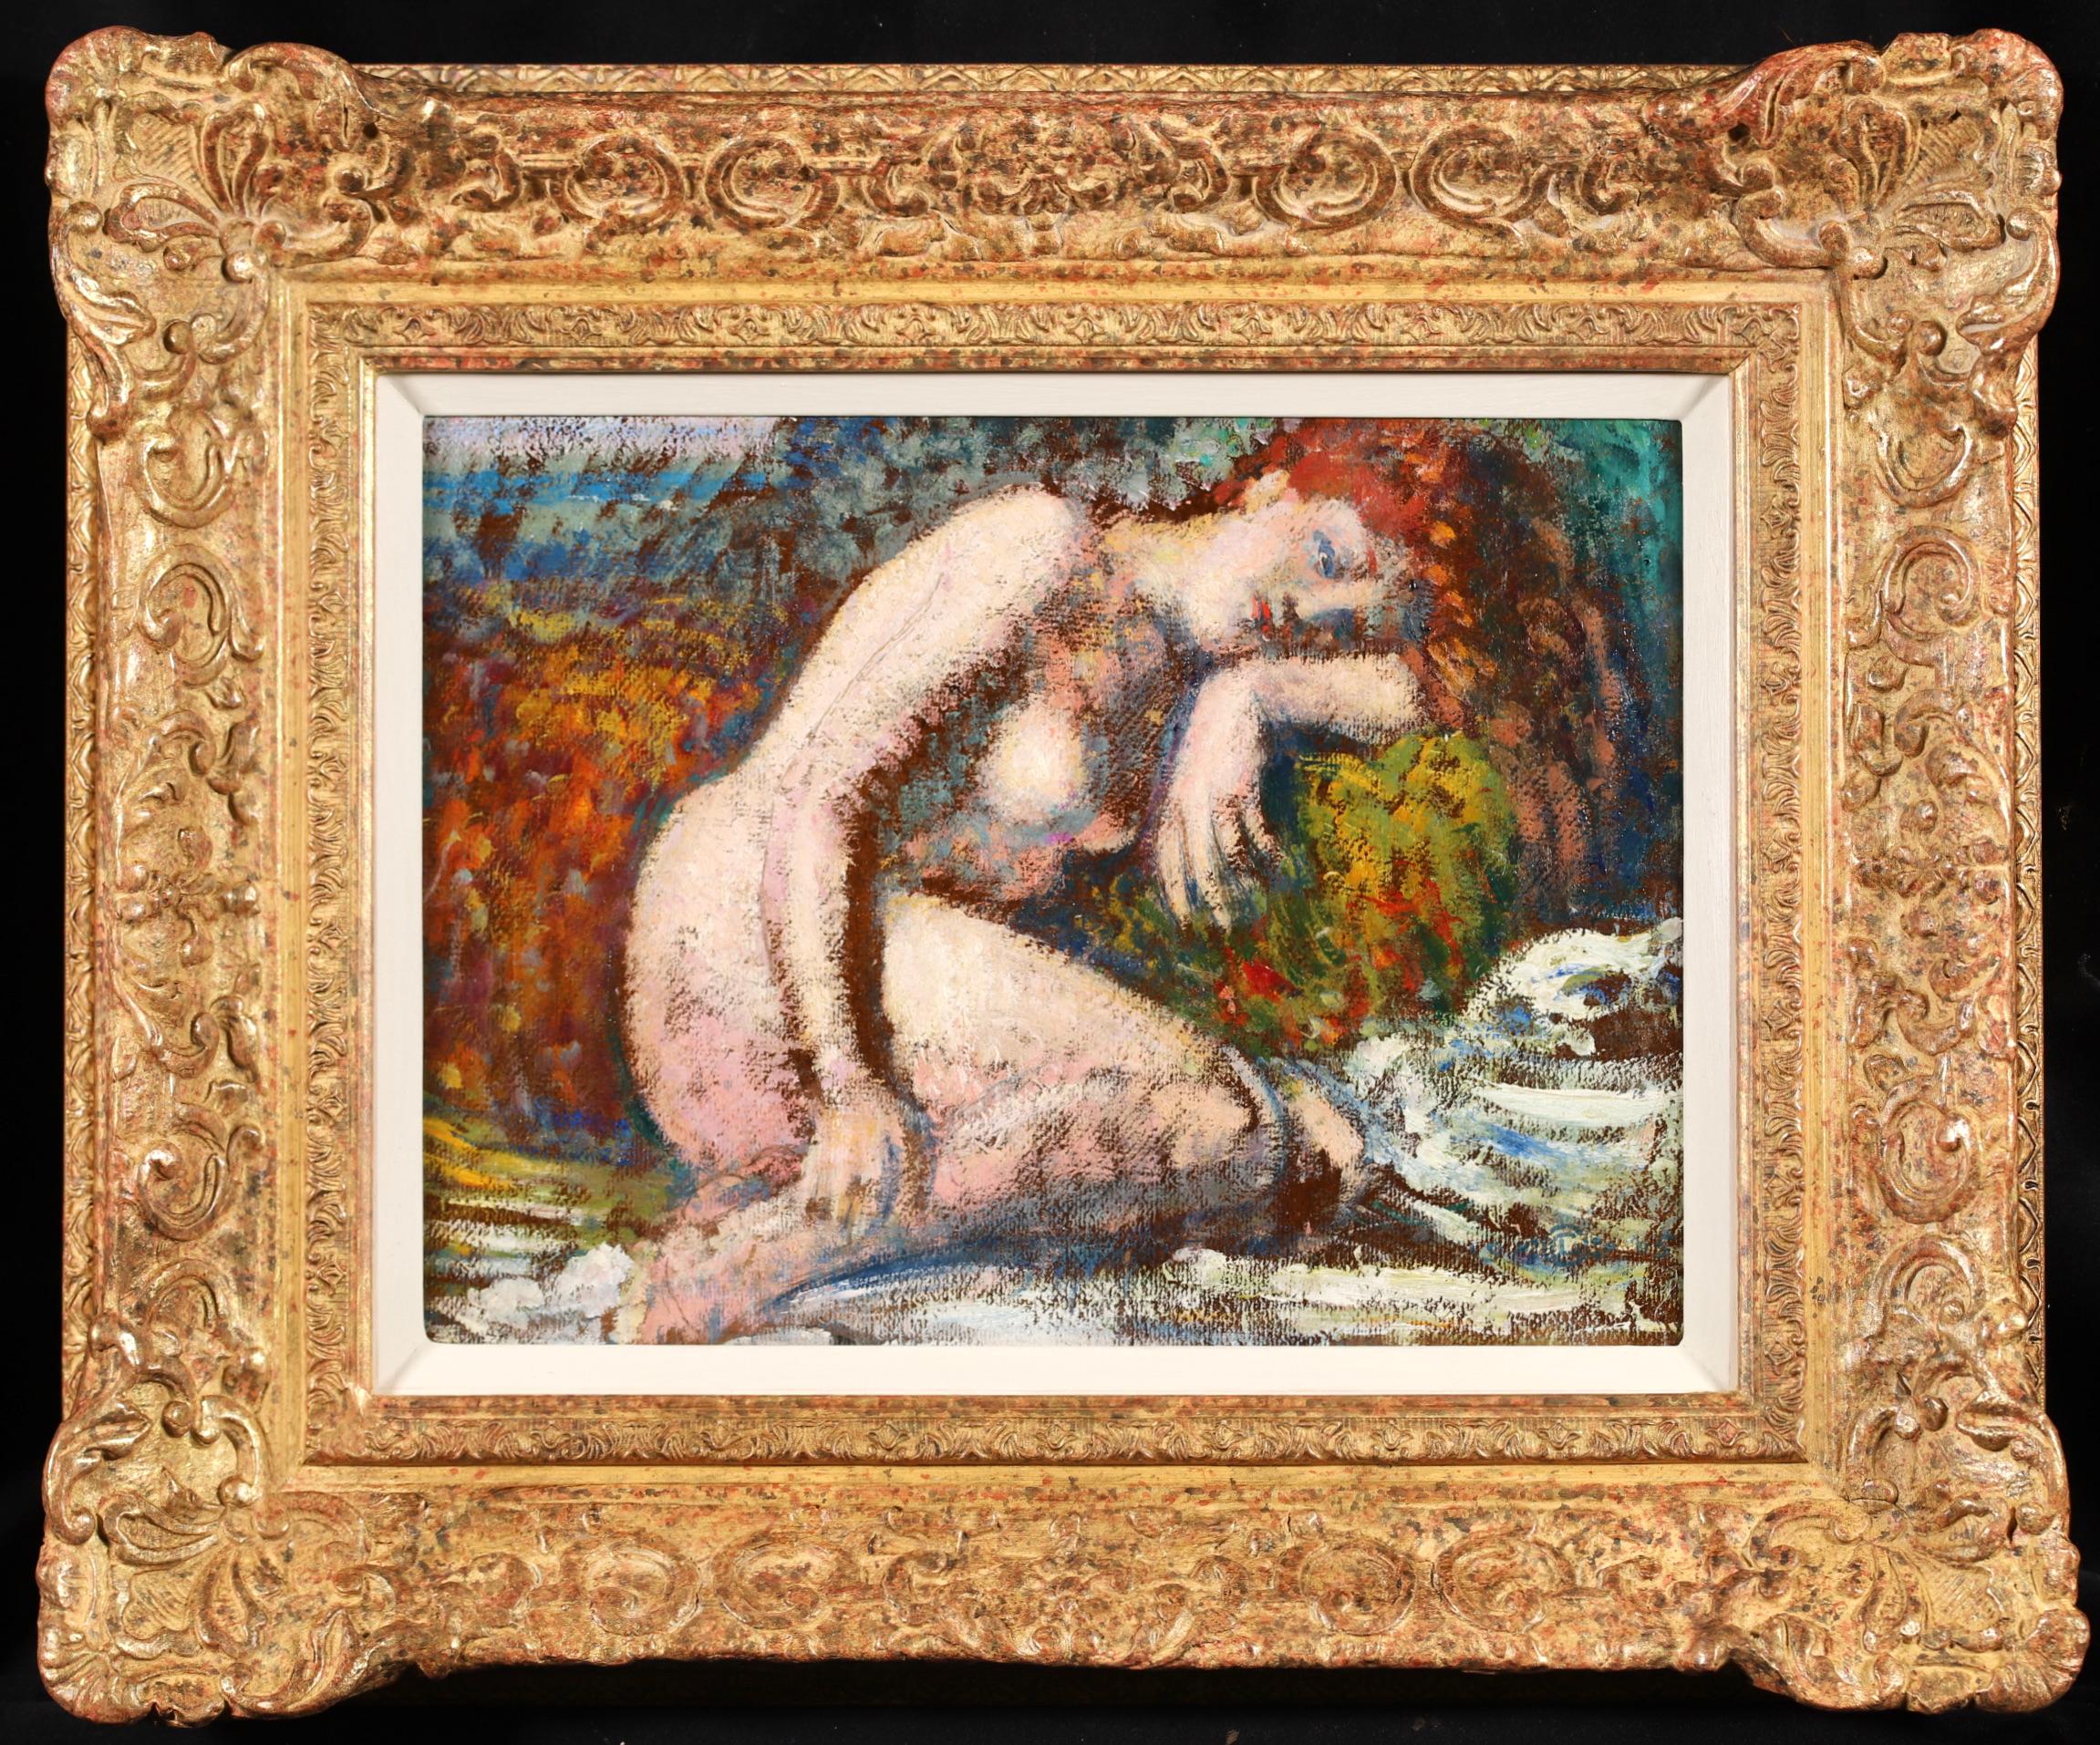 Signiert und betitelt Öl auf Karton Akt circa 1905 von belgischen neo-impressionistischen Maler Georges Lemmen. Das Werk mit dem Titel "Reverie" zeigt eine rothaarige Frau, die sich hinkniet und ihren Kopf auf ihren Arm